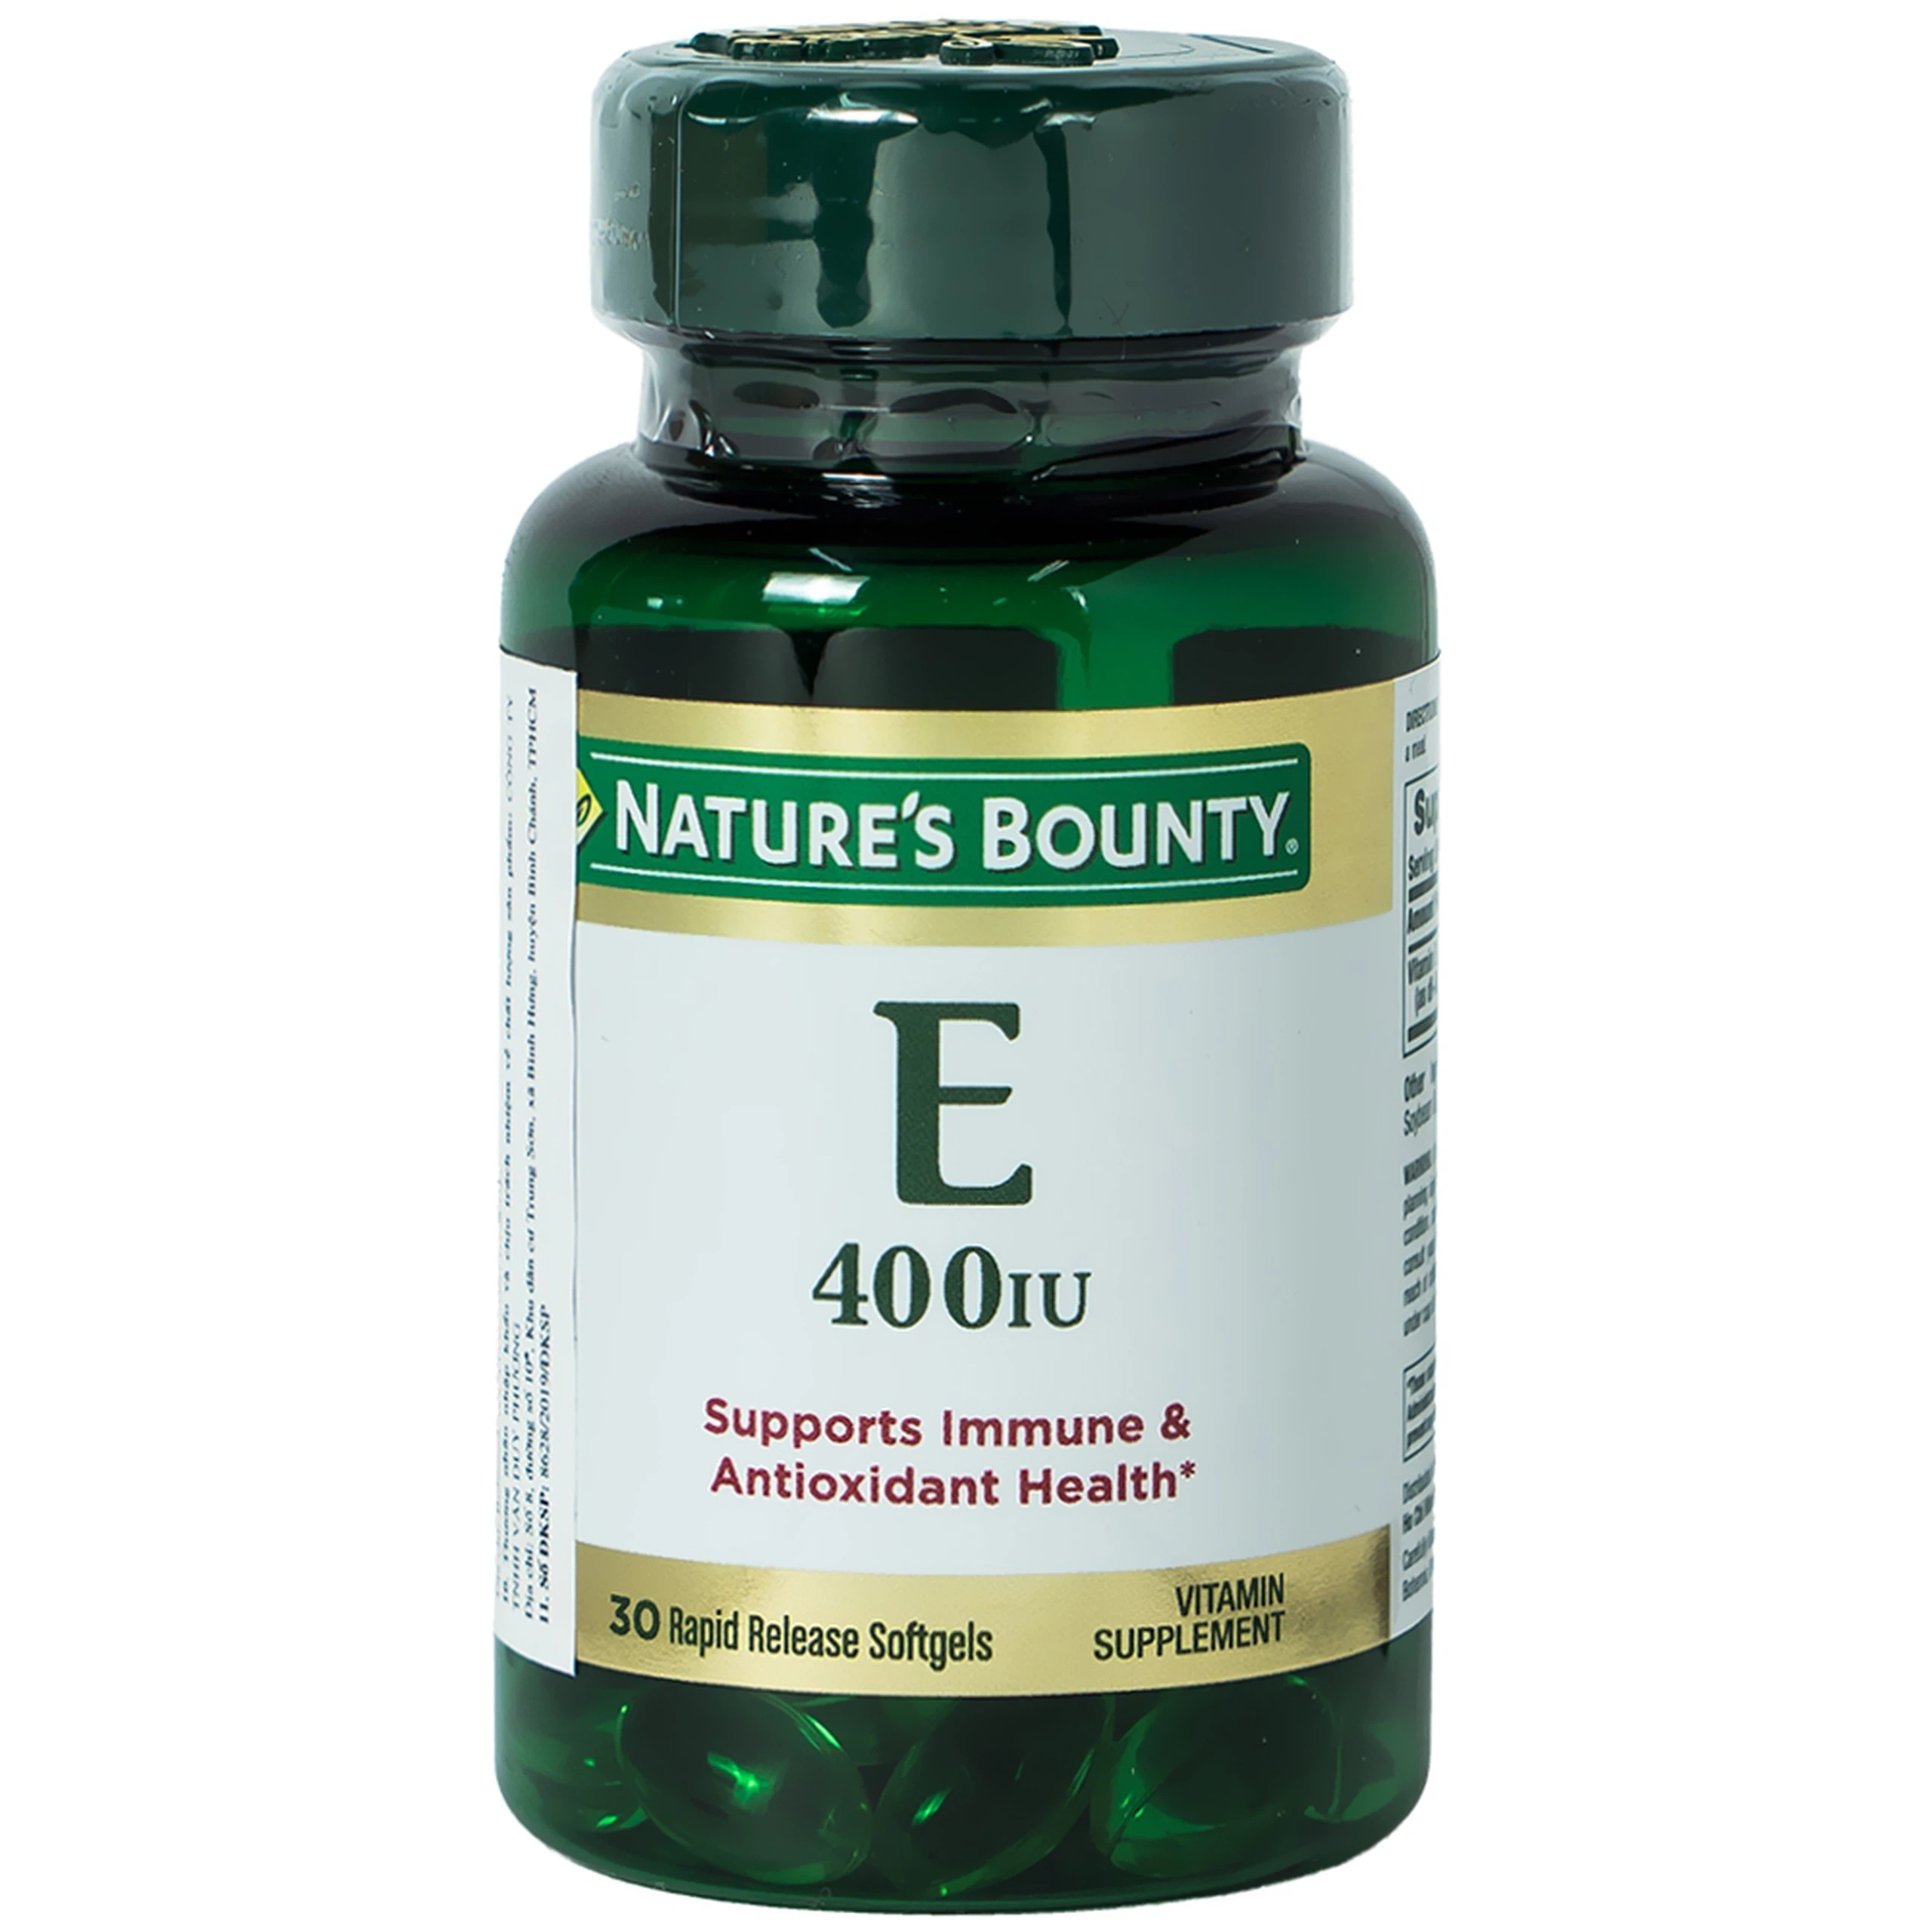 Viên uống Vitamin E 400IU Nature's Bounty hỗ trợ chống oxy hóa, làm chậm quá trình lão hóa da (30 viên)